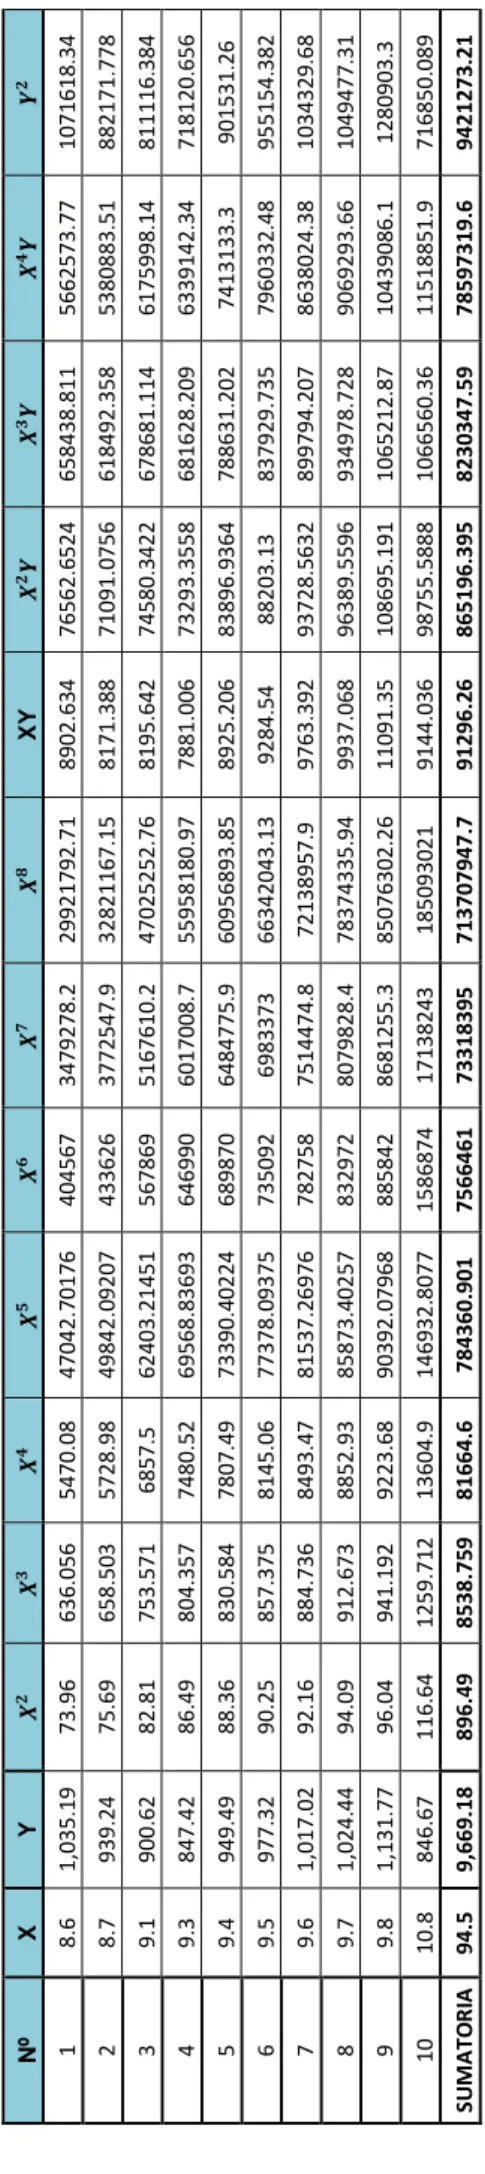 Tabla Nº 08.calculo de sumatorias de la temperatura y rendimiento NºXY